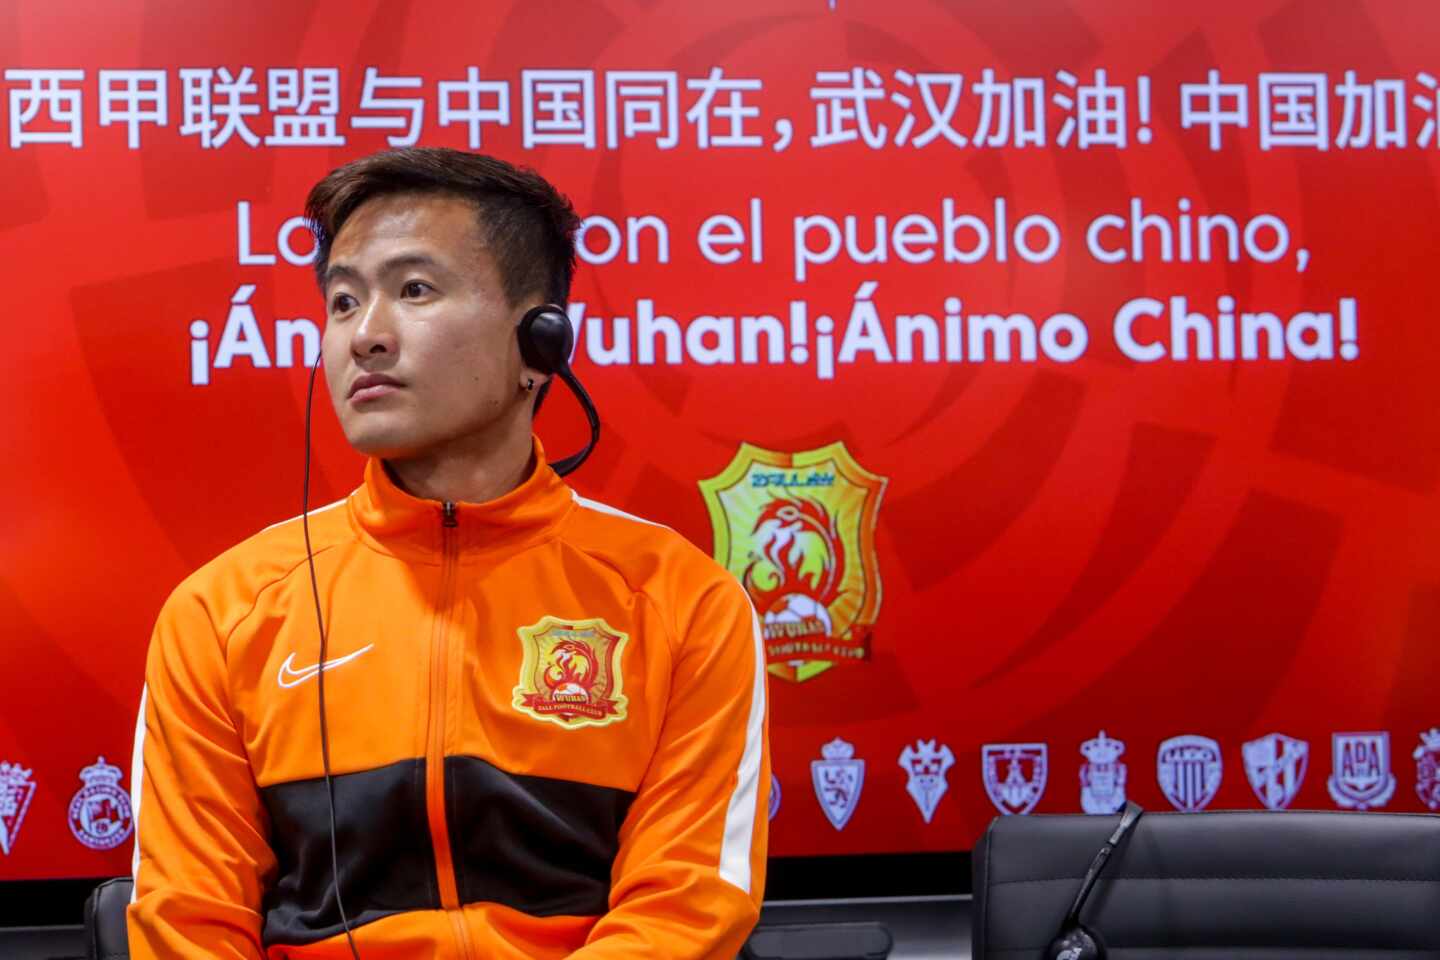 El equipo de fútbol de Wuhan huye de España: "El problema ahora está aquí"